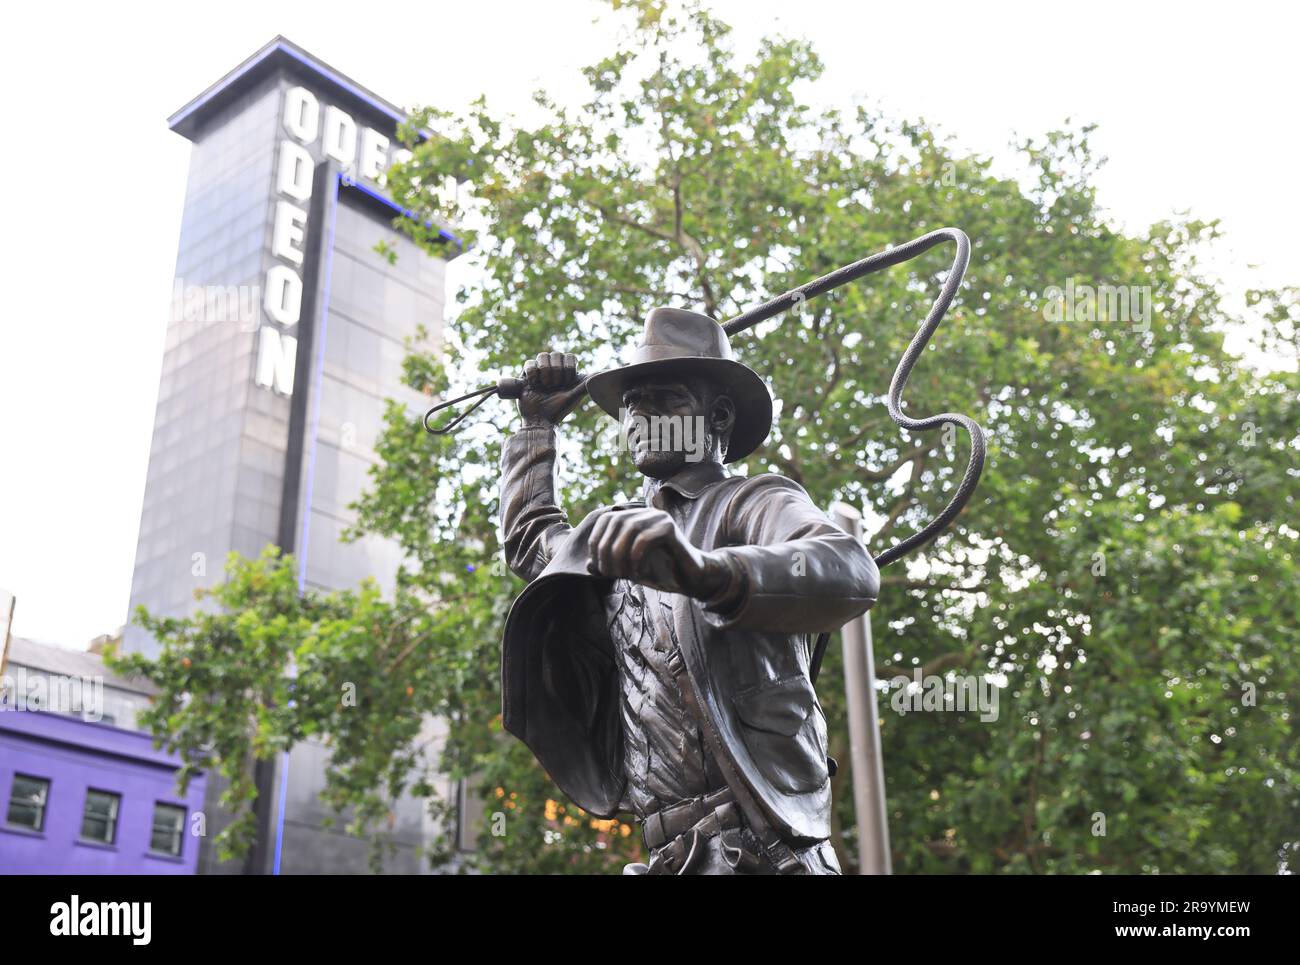 La statua in bronzo di Harrison Ford nel ruolo di Indiana Jones, il suo iconico personaggio esploratore, è stata svelata a Leicester Square per celebrare l'uscita del quinto, e probabilmente ultimo film, "Indiana Jones and the Dial of Destiny". Il personaggio si unisce ad altre icone cinematografiche nell'area Scenes in the Square, Londra, Regno Unito Foto Stock